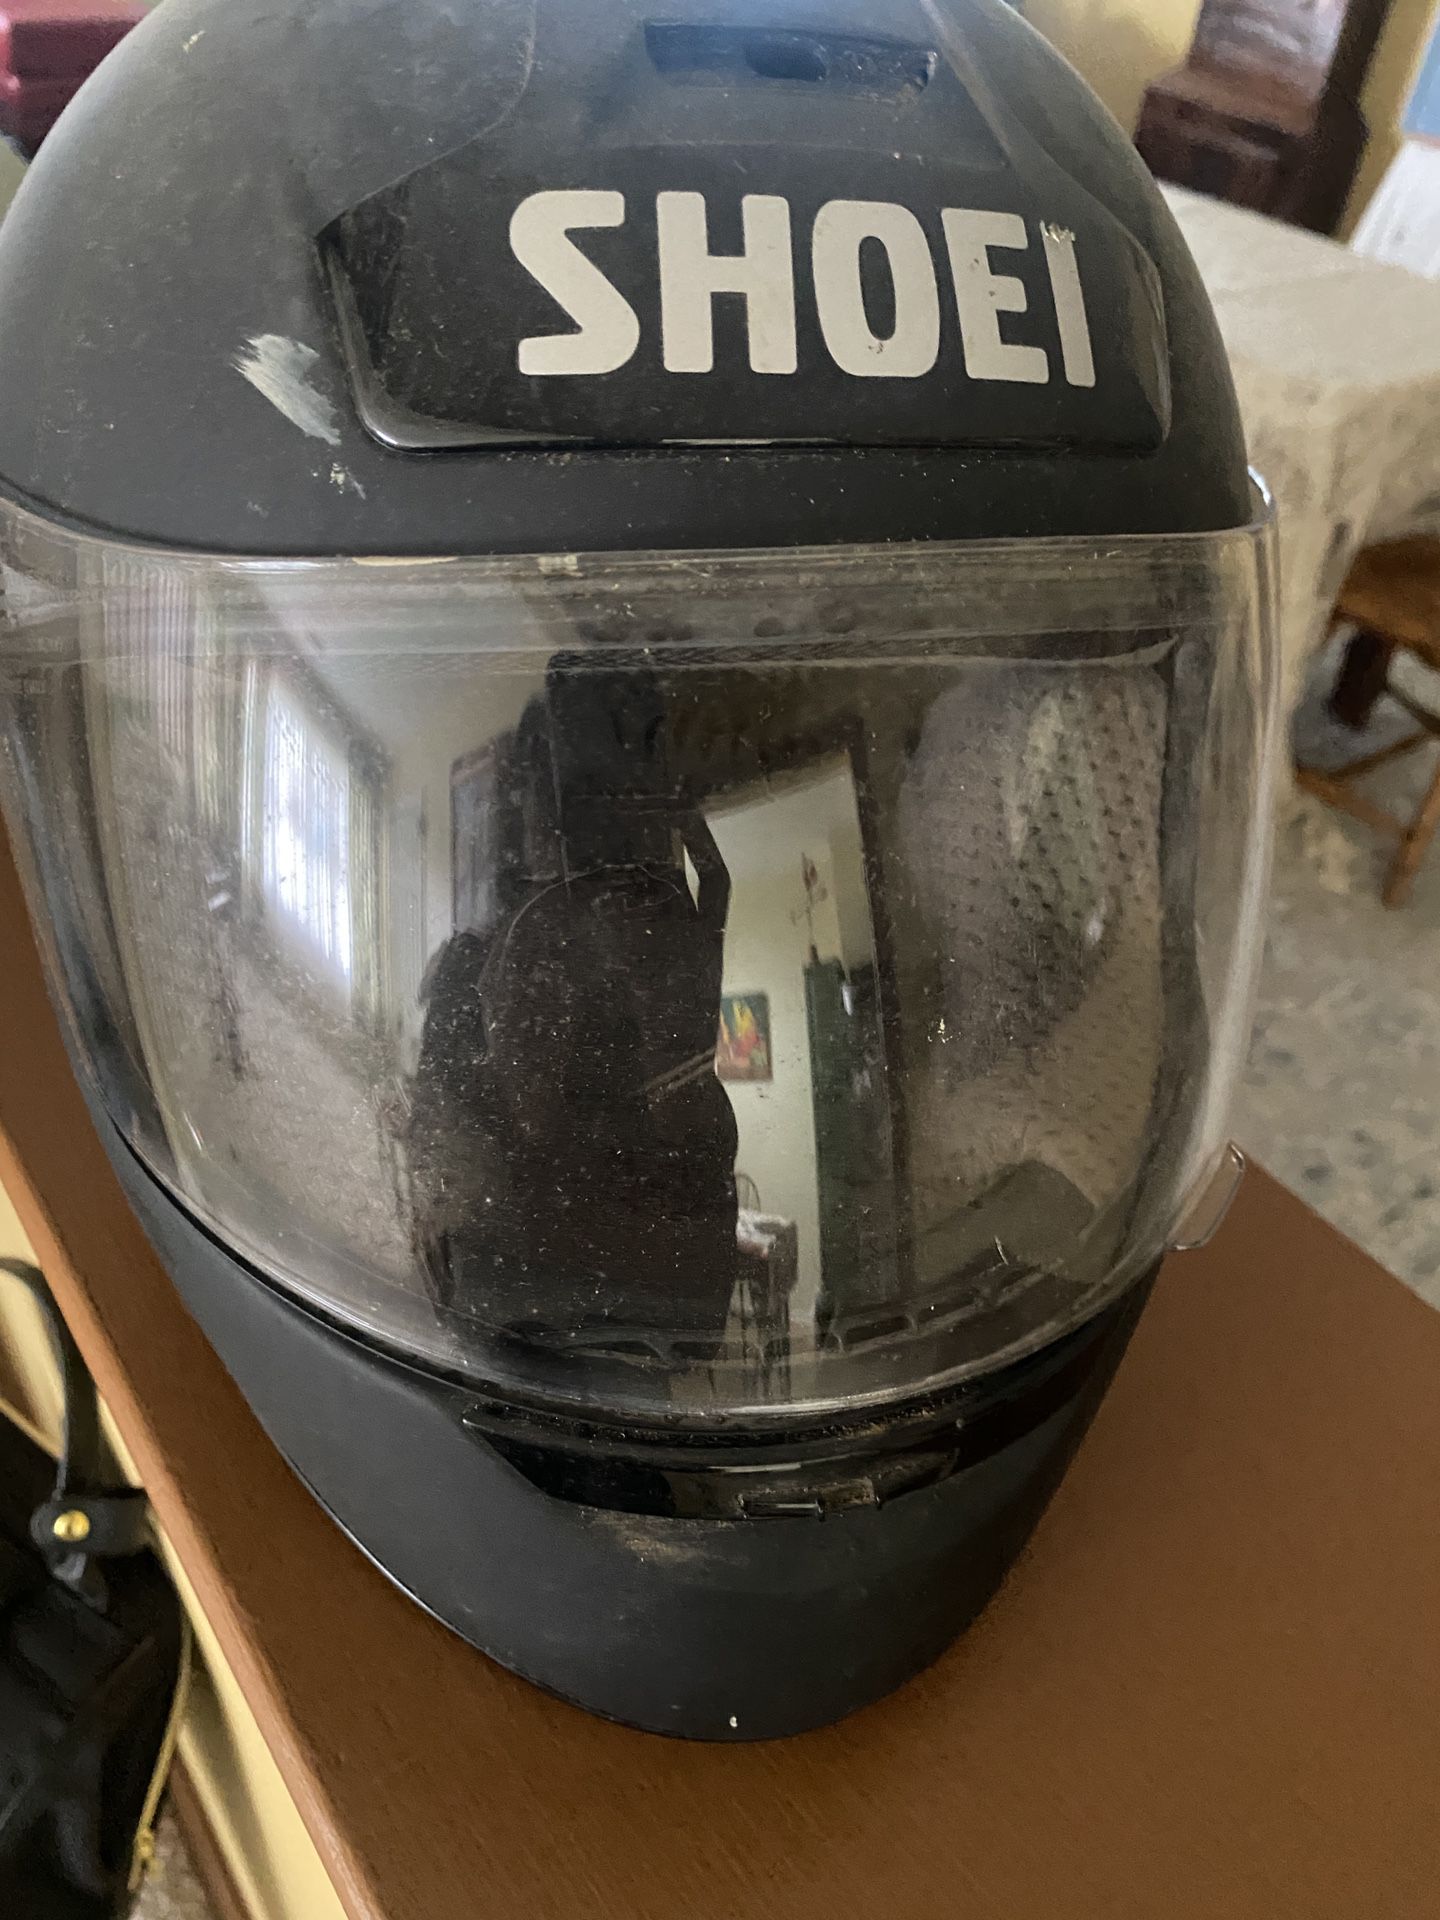 SHOEI Motorcycle Helmet